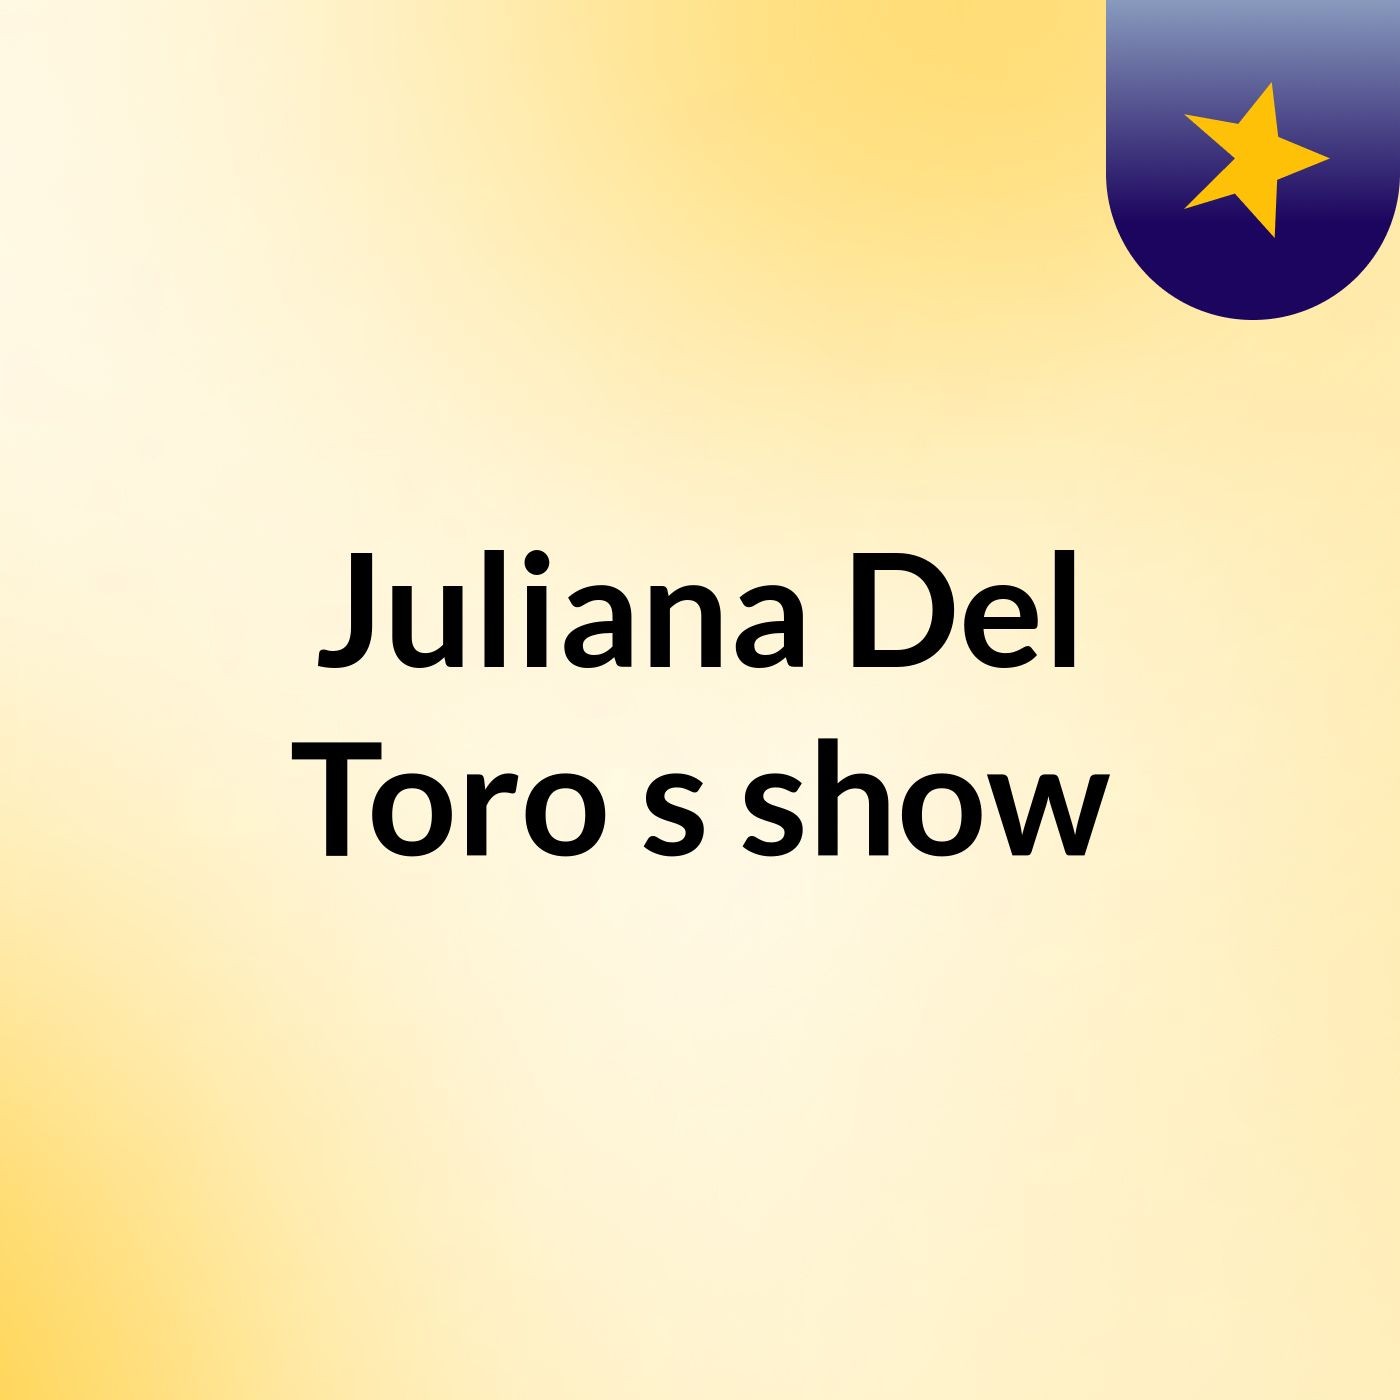 Juliana Del Toro's show